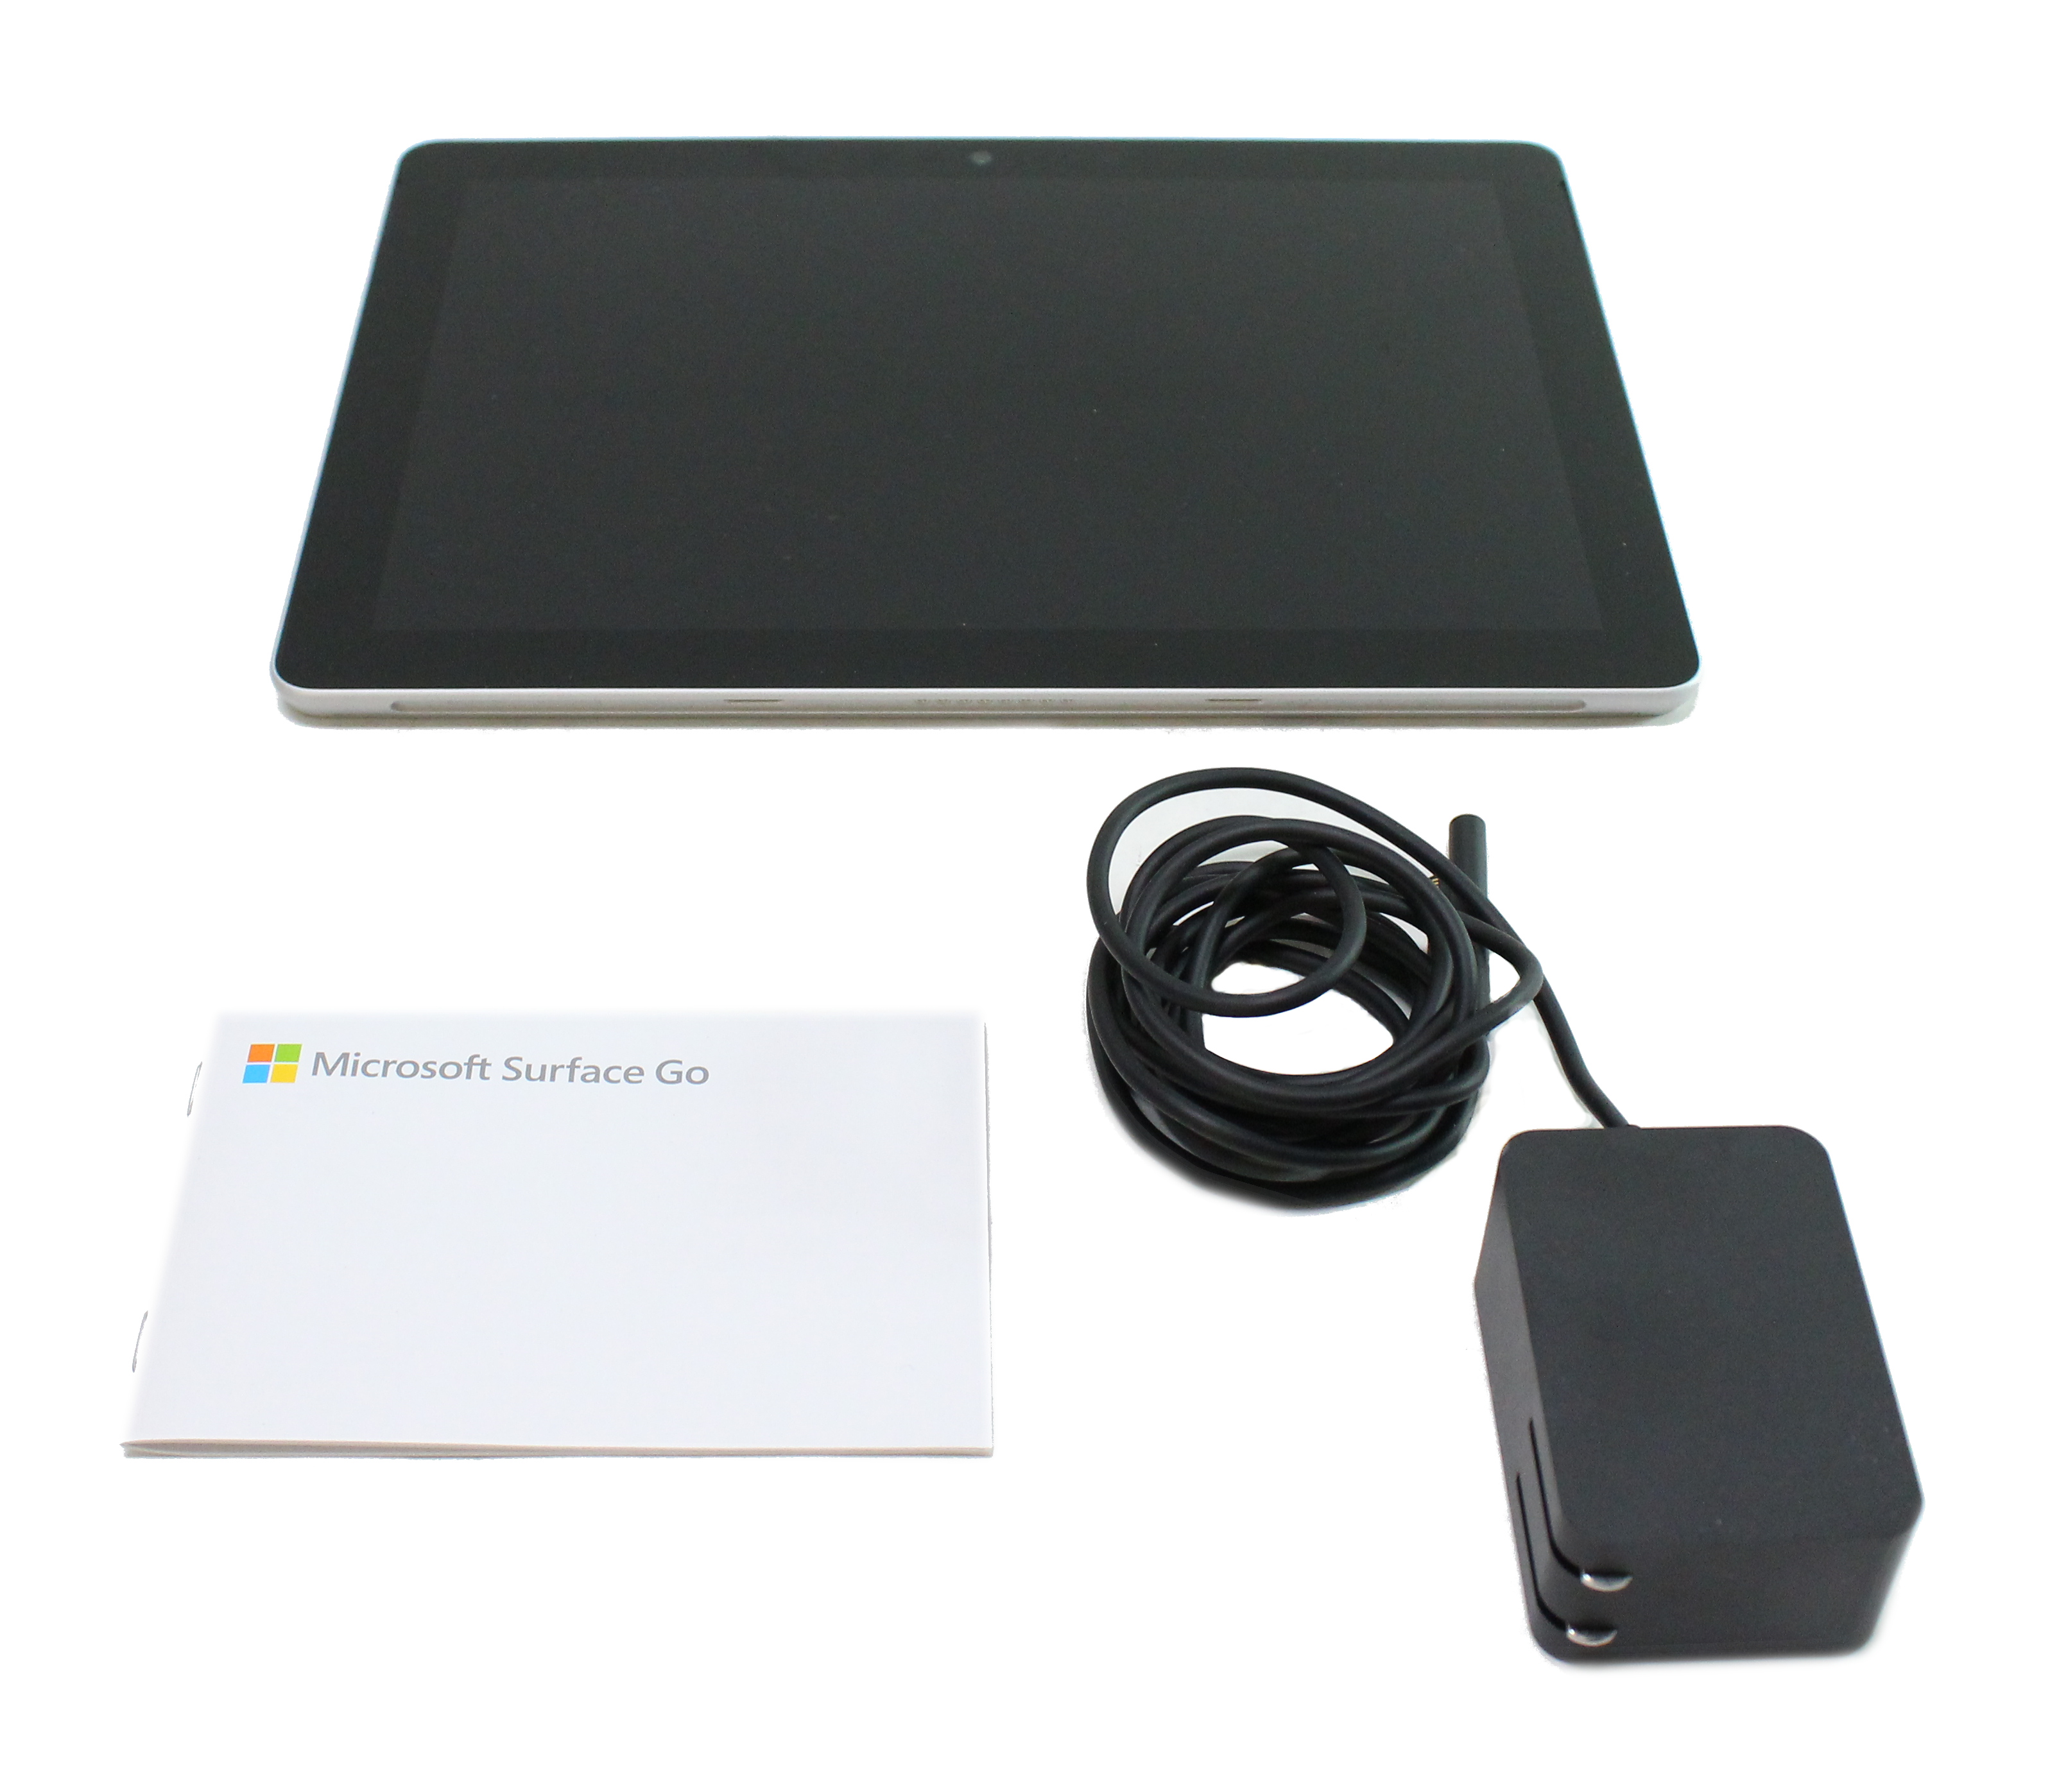 Microsoft Surface Go 1824 10 Intel Pentium 4415Y 1.6 GHz RAM 8Gb